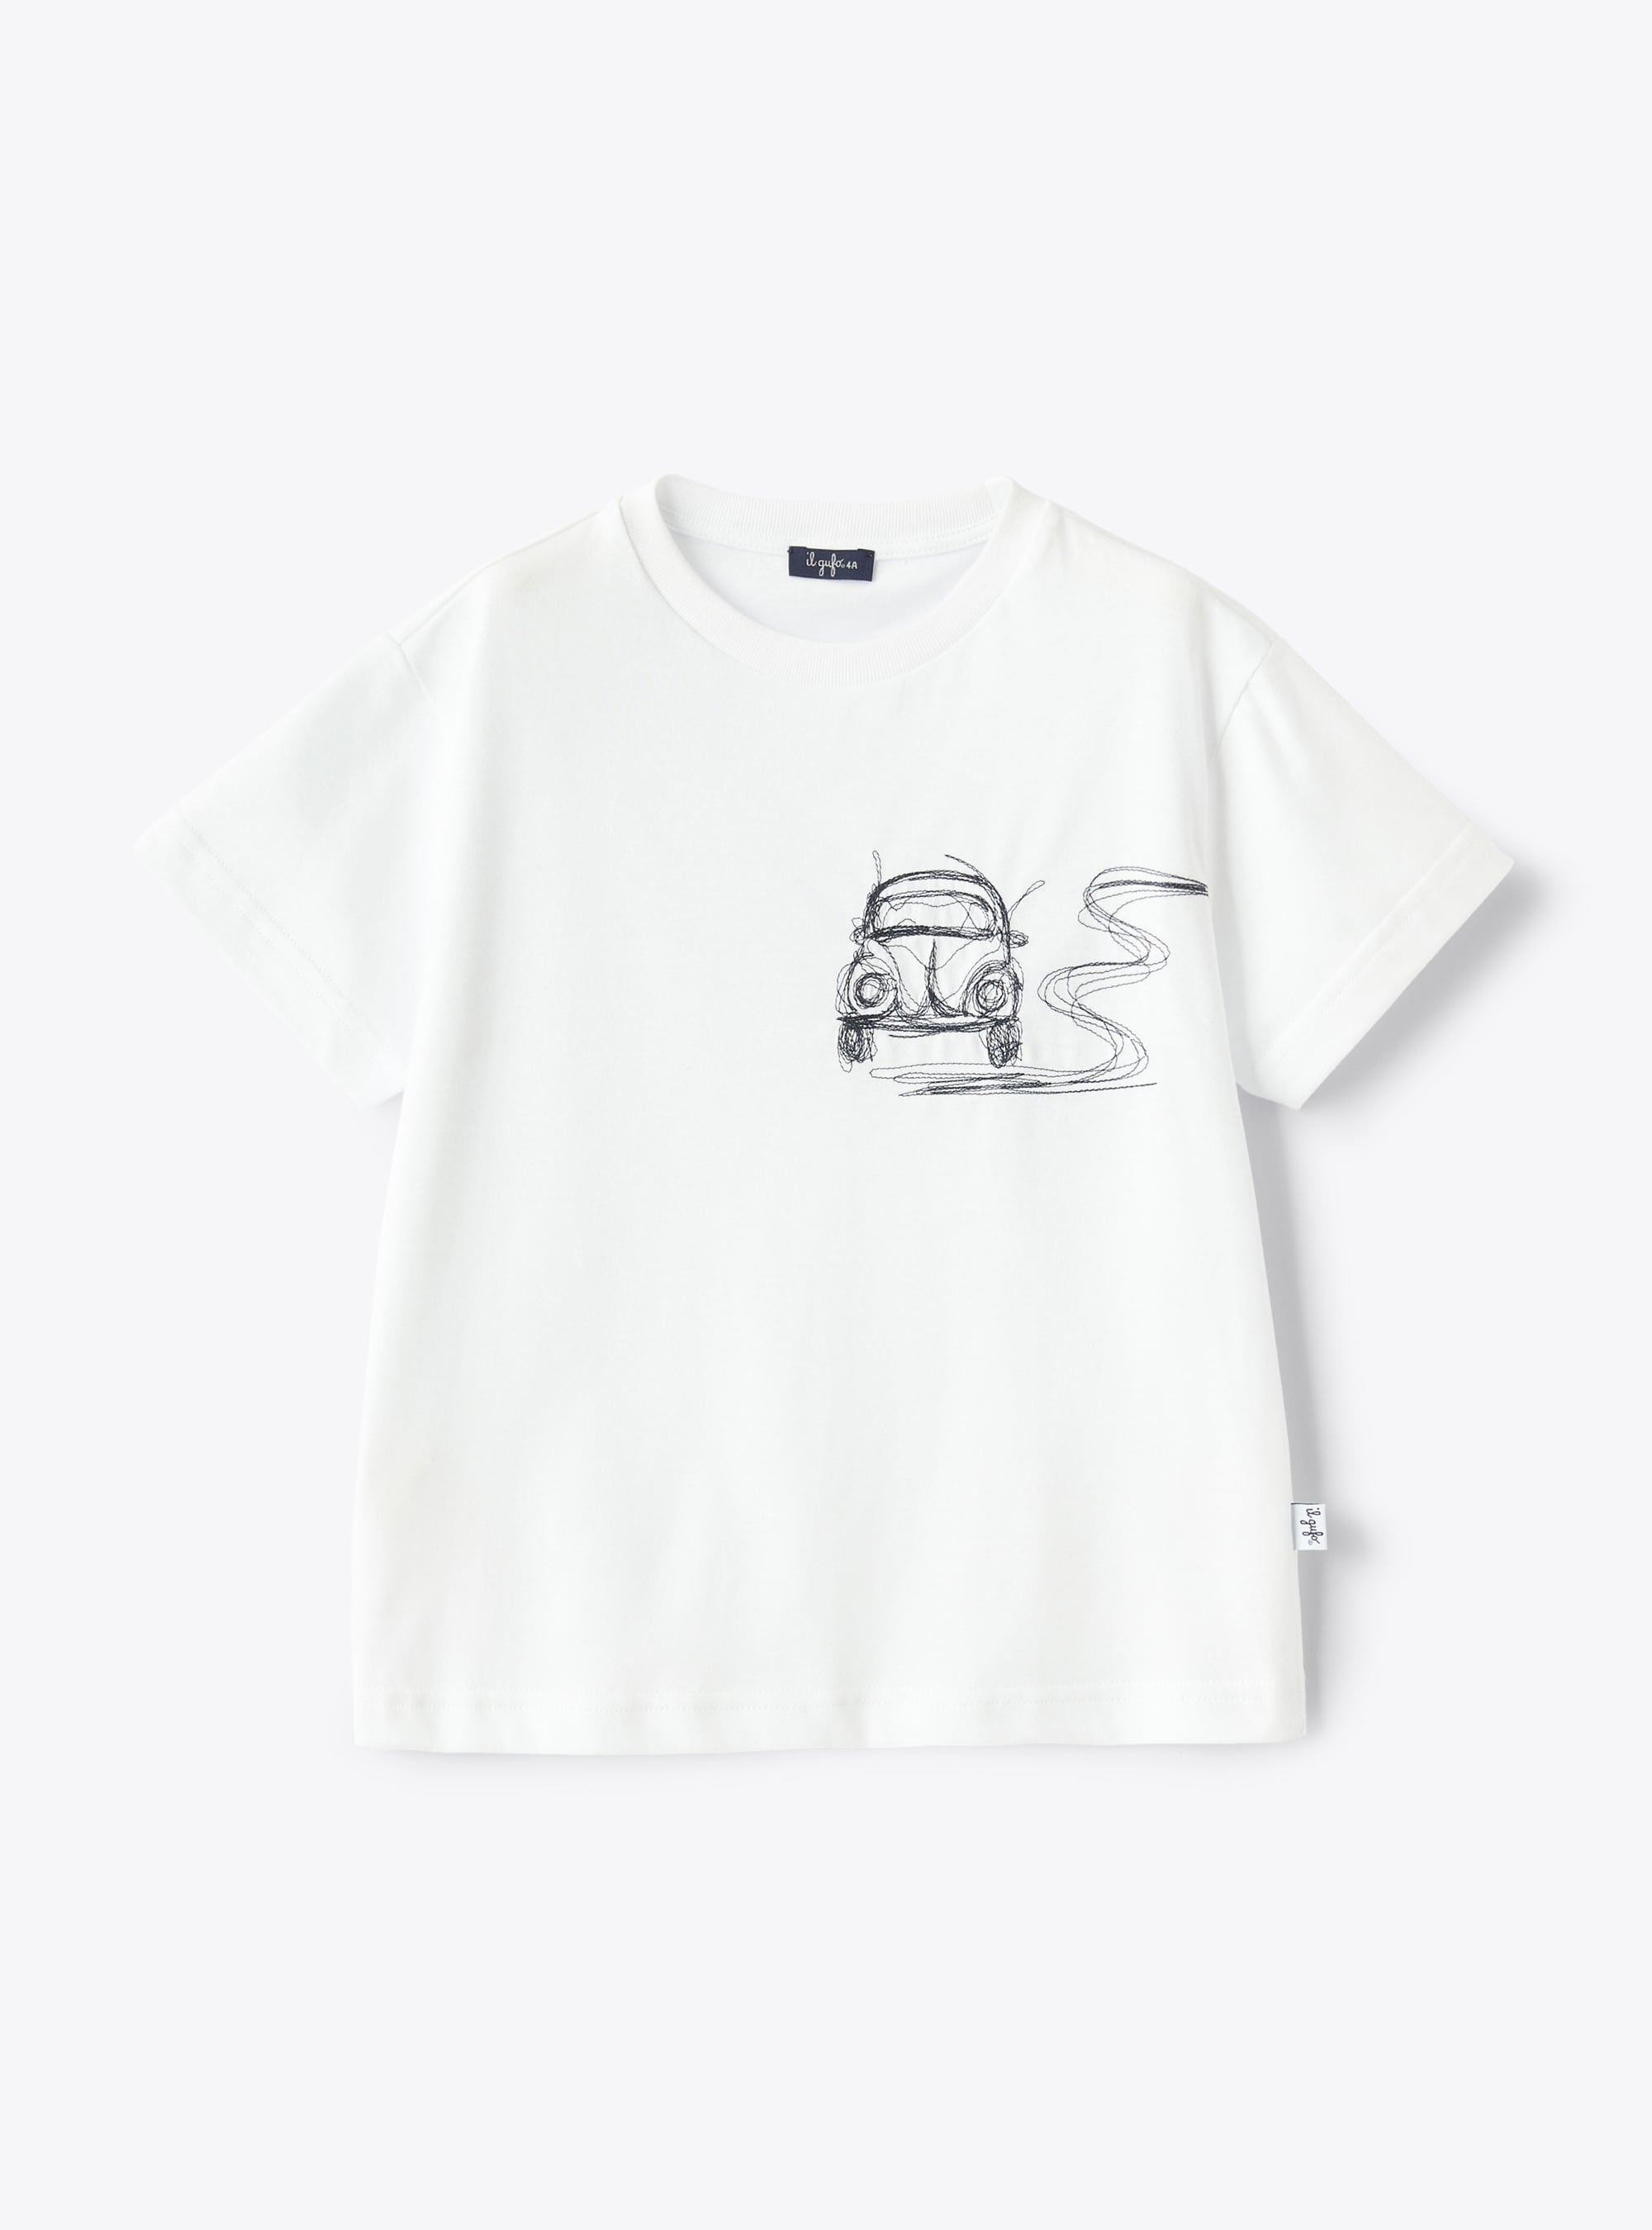 Белая футболка с вышивкой «Автомобиль» синего цвета - Футболки - Il Gufo